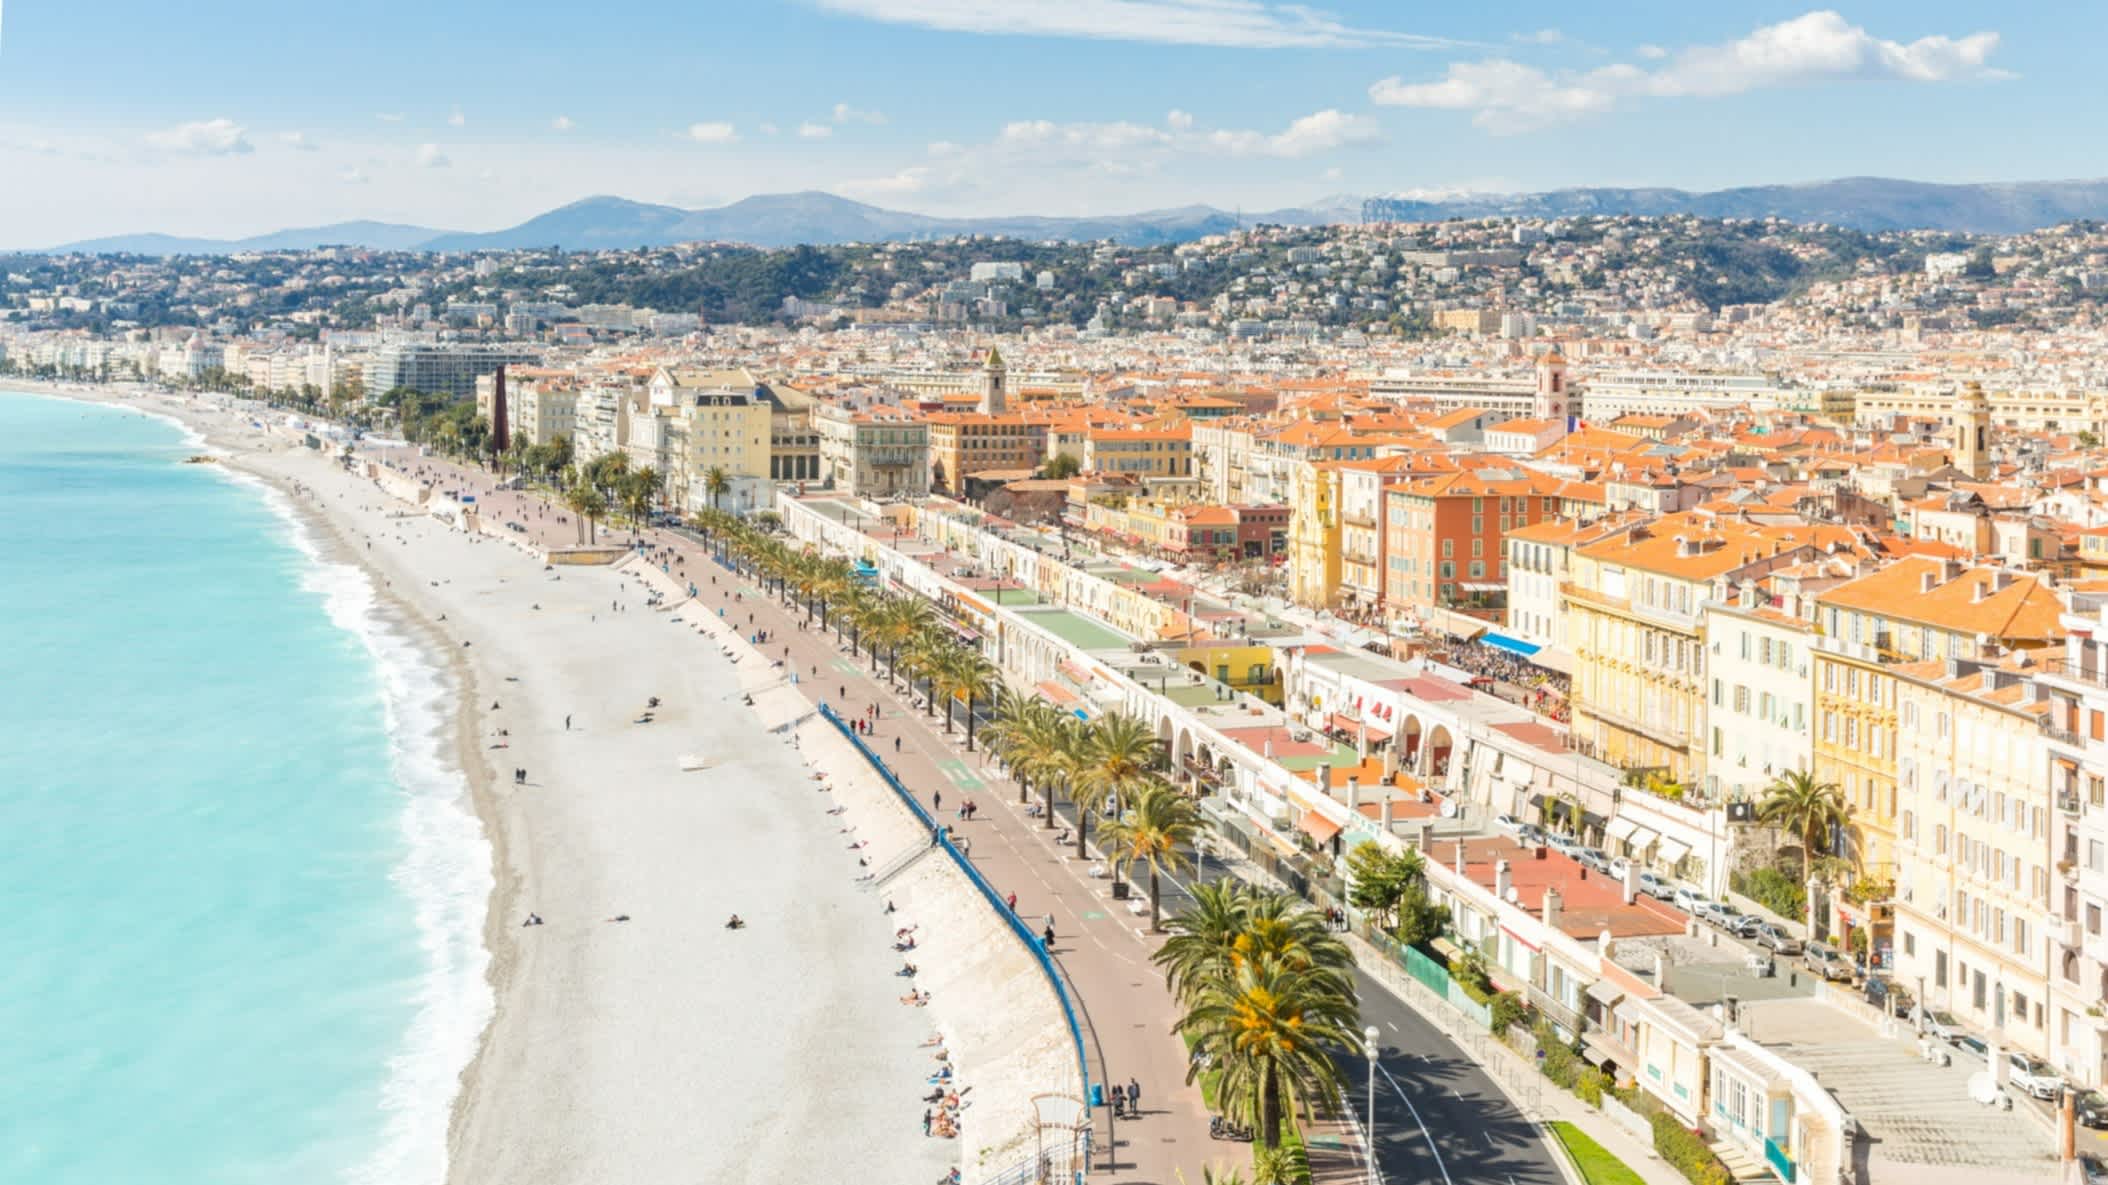 Vue aérienne sur la plage de la Méditerranée à Nice, Cote d'Azur, France

